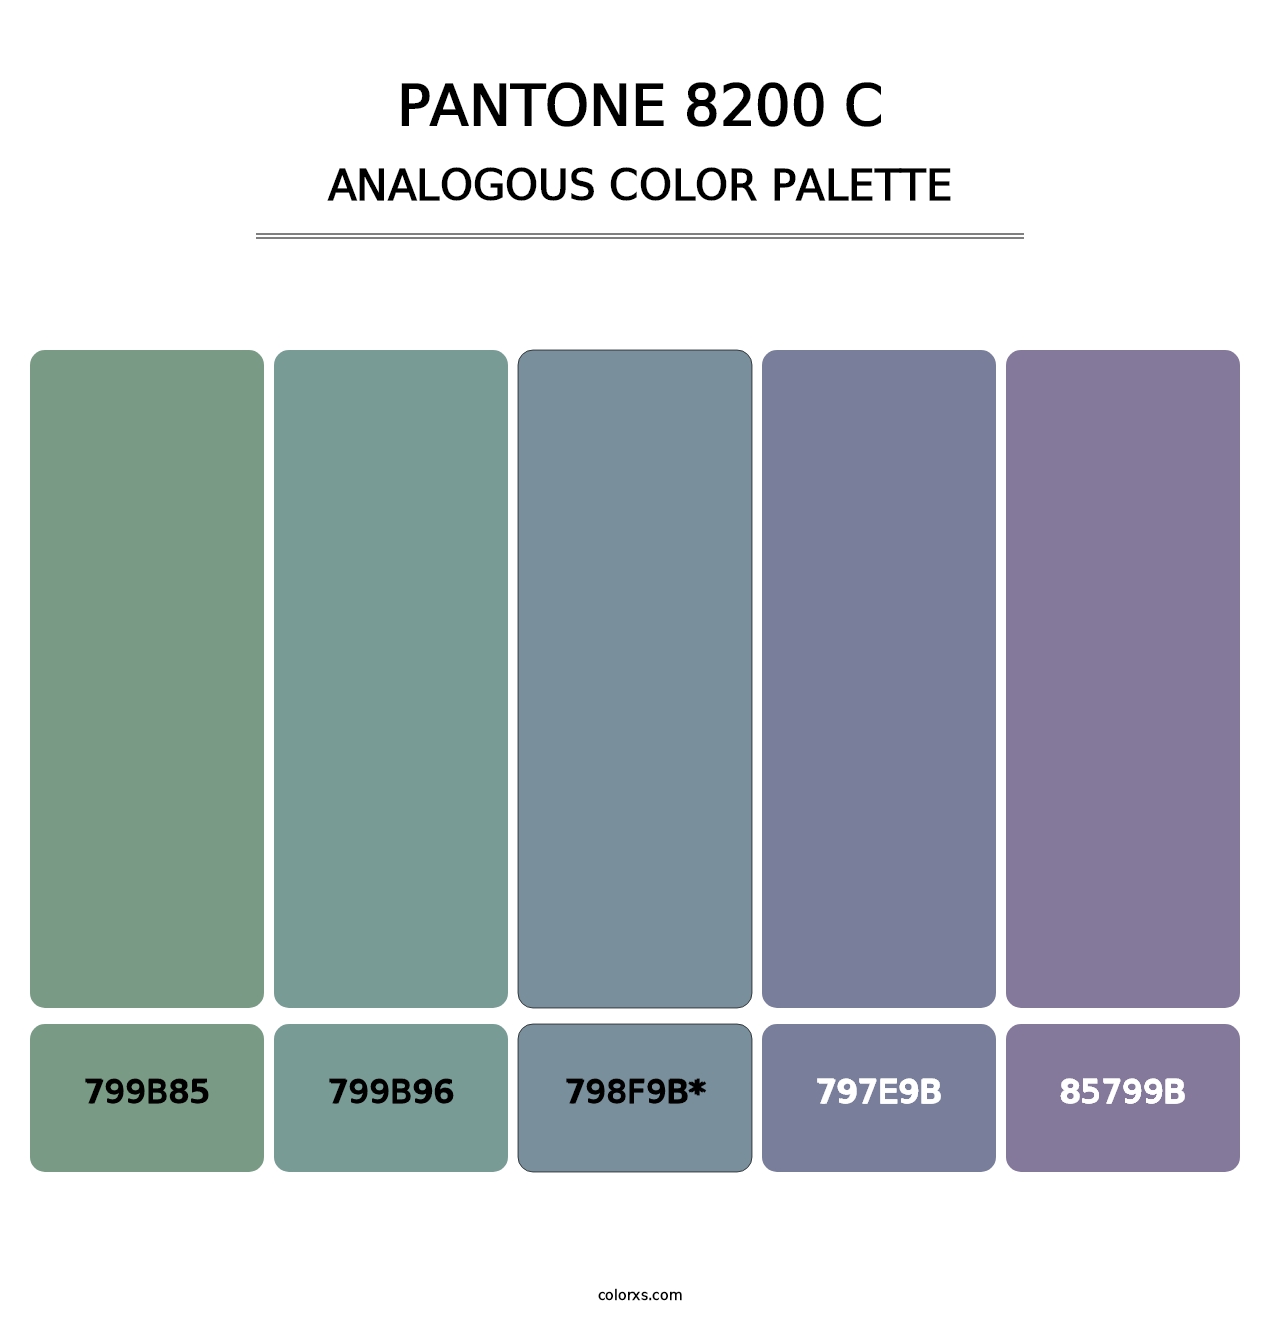 PANTONE 8200 C - Analogous Color Palette